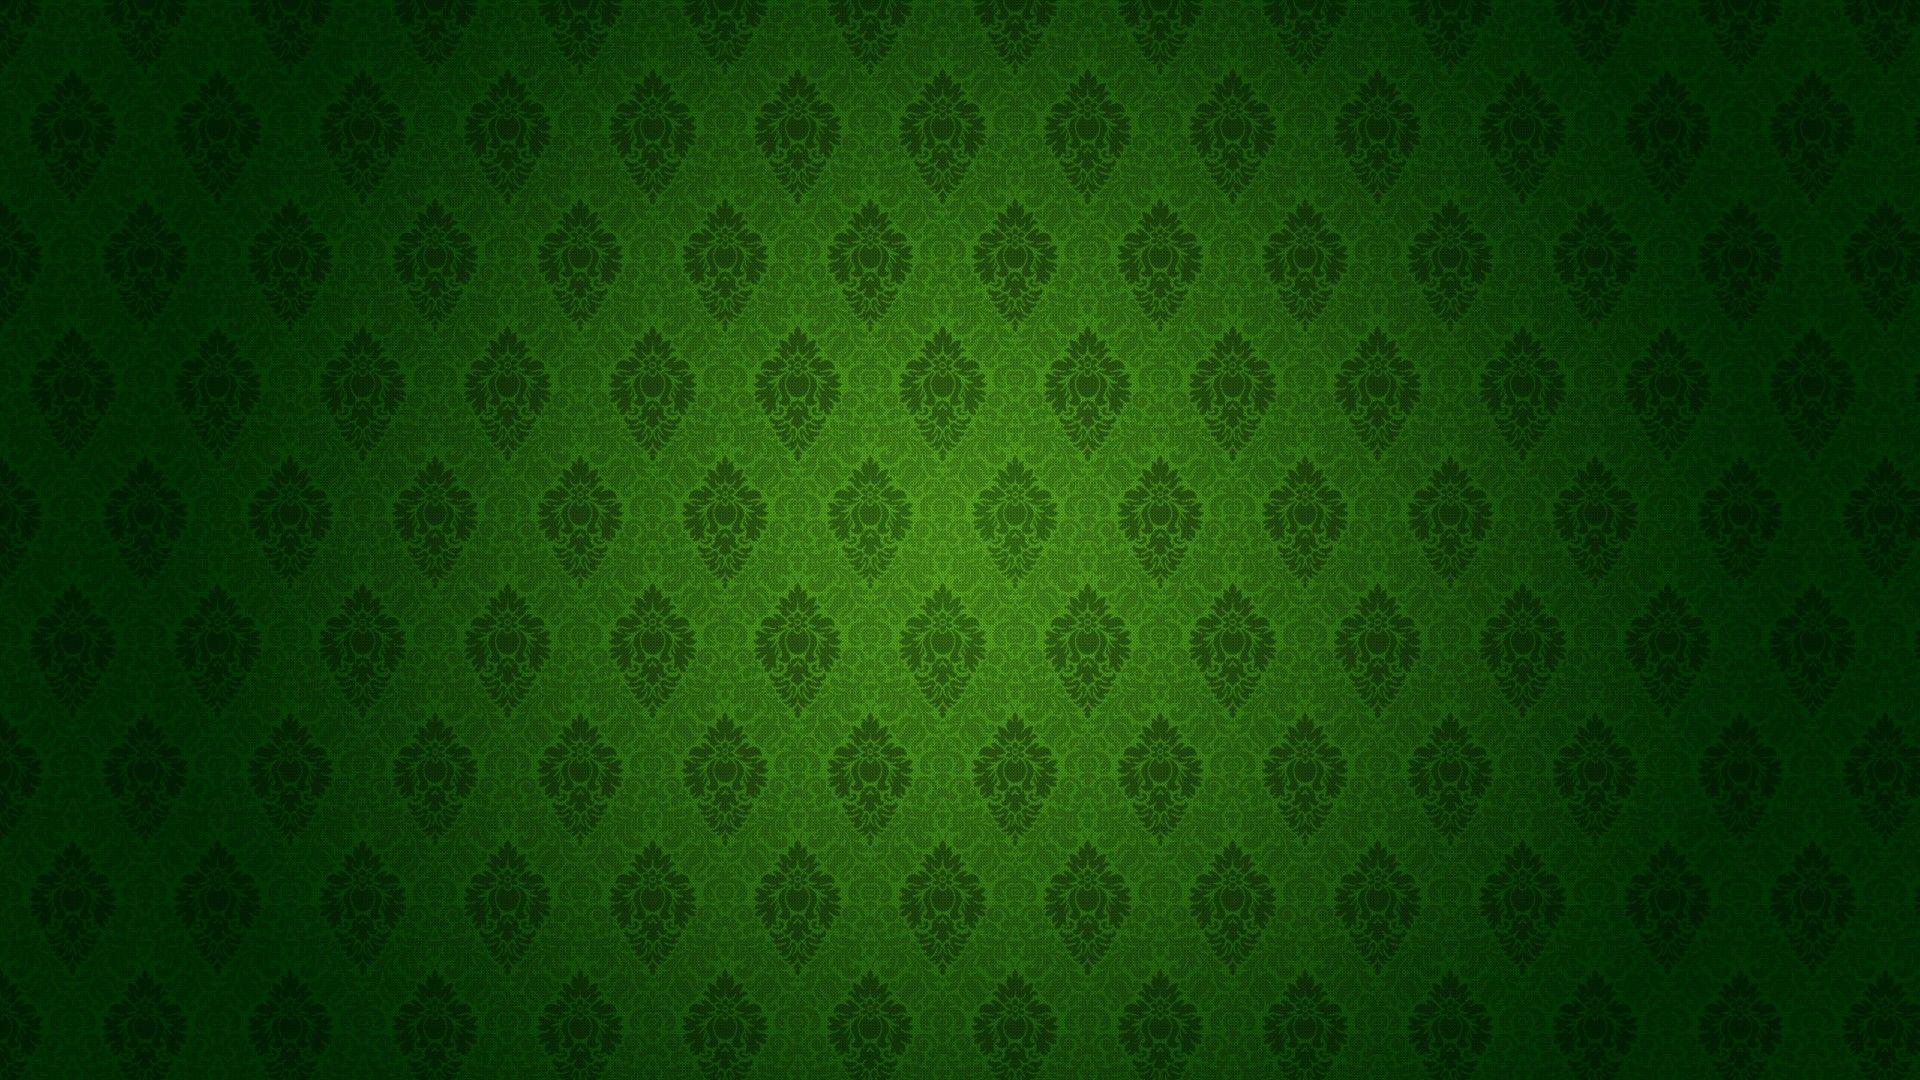 Green Pattern Wallpapers - Top Những Hình Ảnh Đẹp: Đam mê với hình ảnh xanh lá cây và đang tìm kiếm một hình nền đẹp cho máy tính? Đừng bỏ qua các tác phẩm nghệ thuật và phong cách cực kỳ độc đáo mà chúng tôi giới thiệu. Những hình nền xanh lá cây với các mẫu hoa, lá, cây cối hay các họa tiết độc đáo chắc chắn sẽ khiến bạn vô cùng ấn tượng!